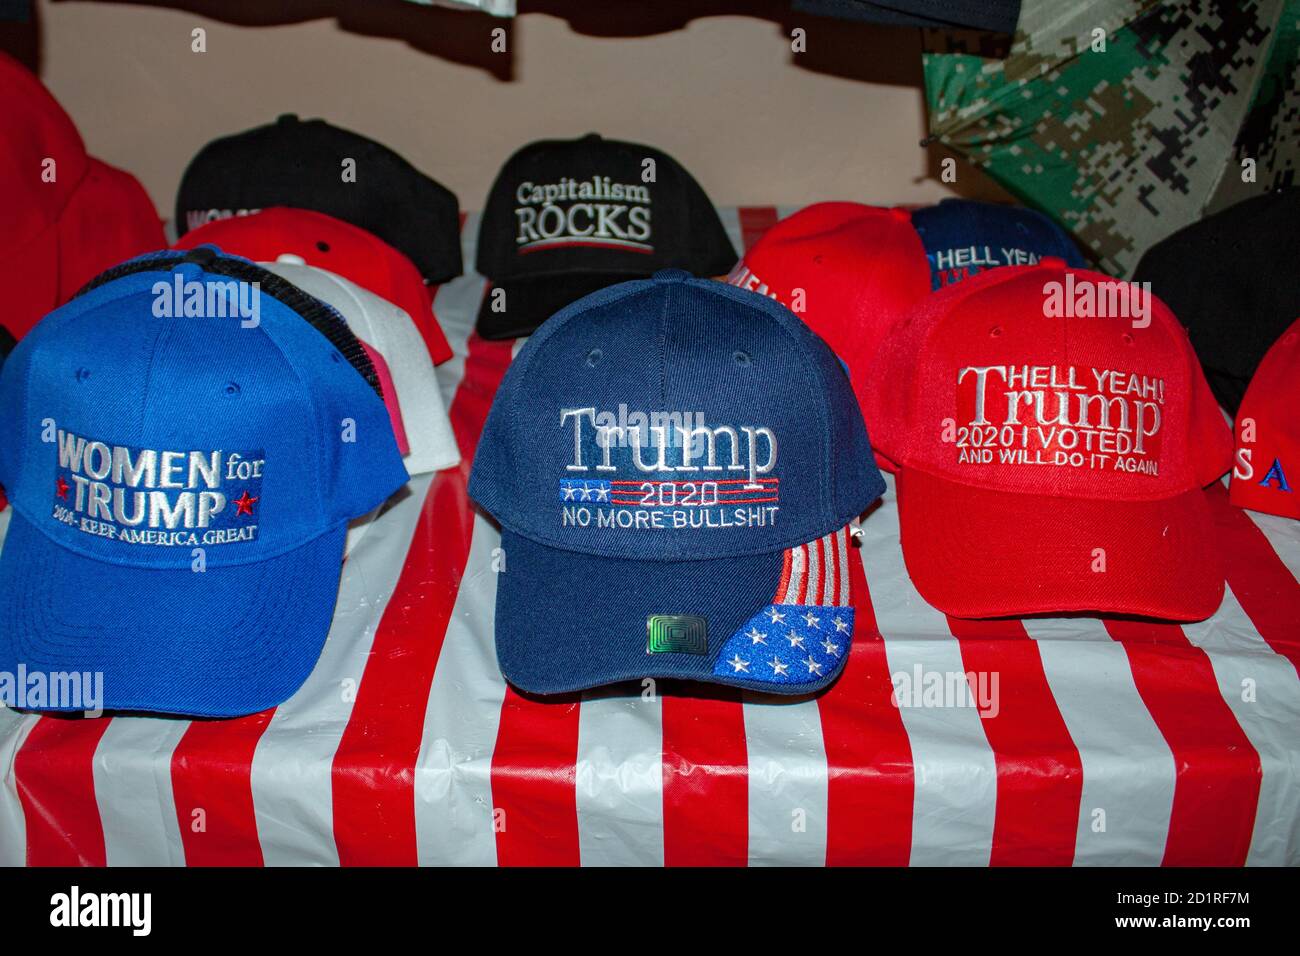 Cappelli in un negozio di Wickenburg, Arizona, USA che sostiene il presidente degli Stati Uniti Donald Trump in preparazione alle elezioni americane del 2020 Foto Stock